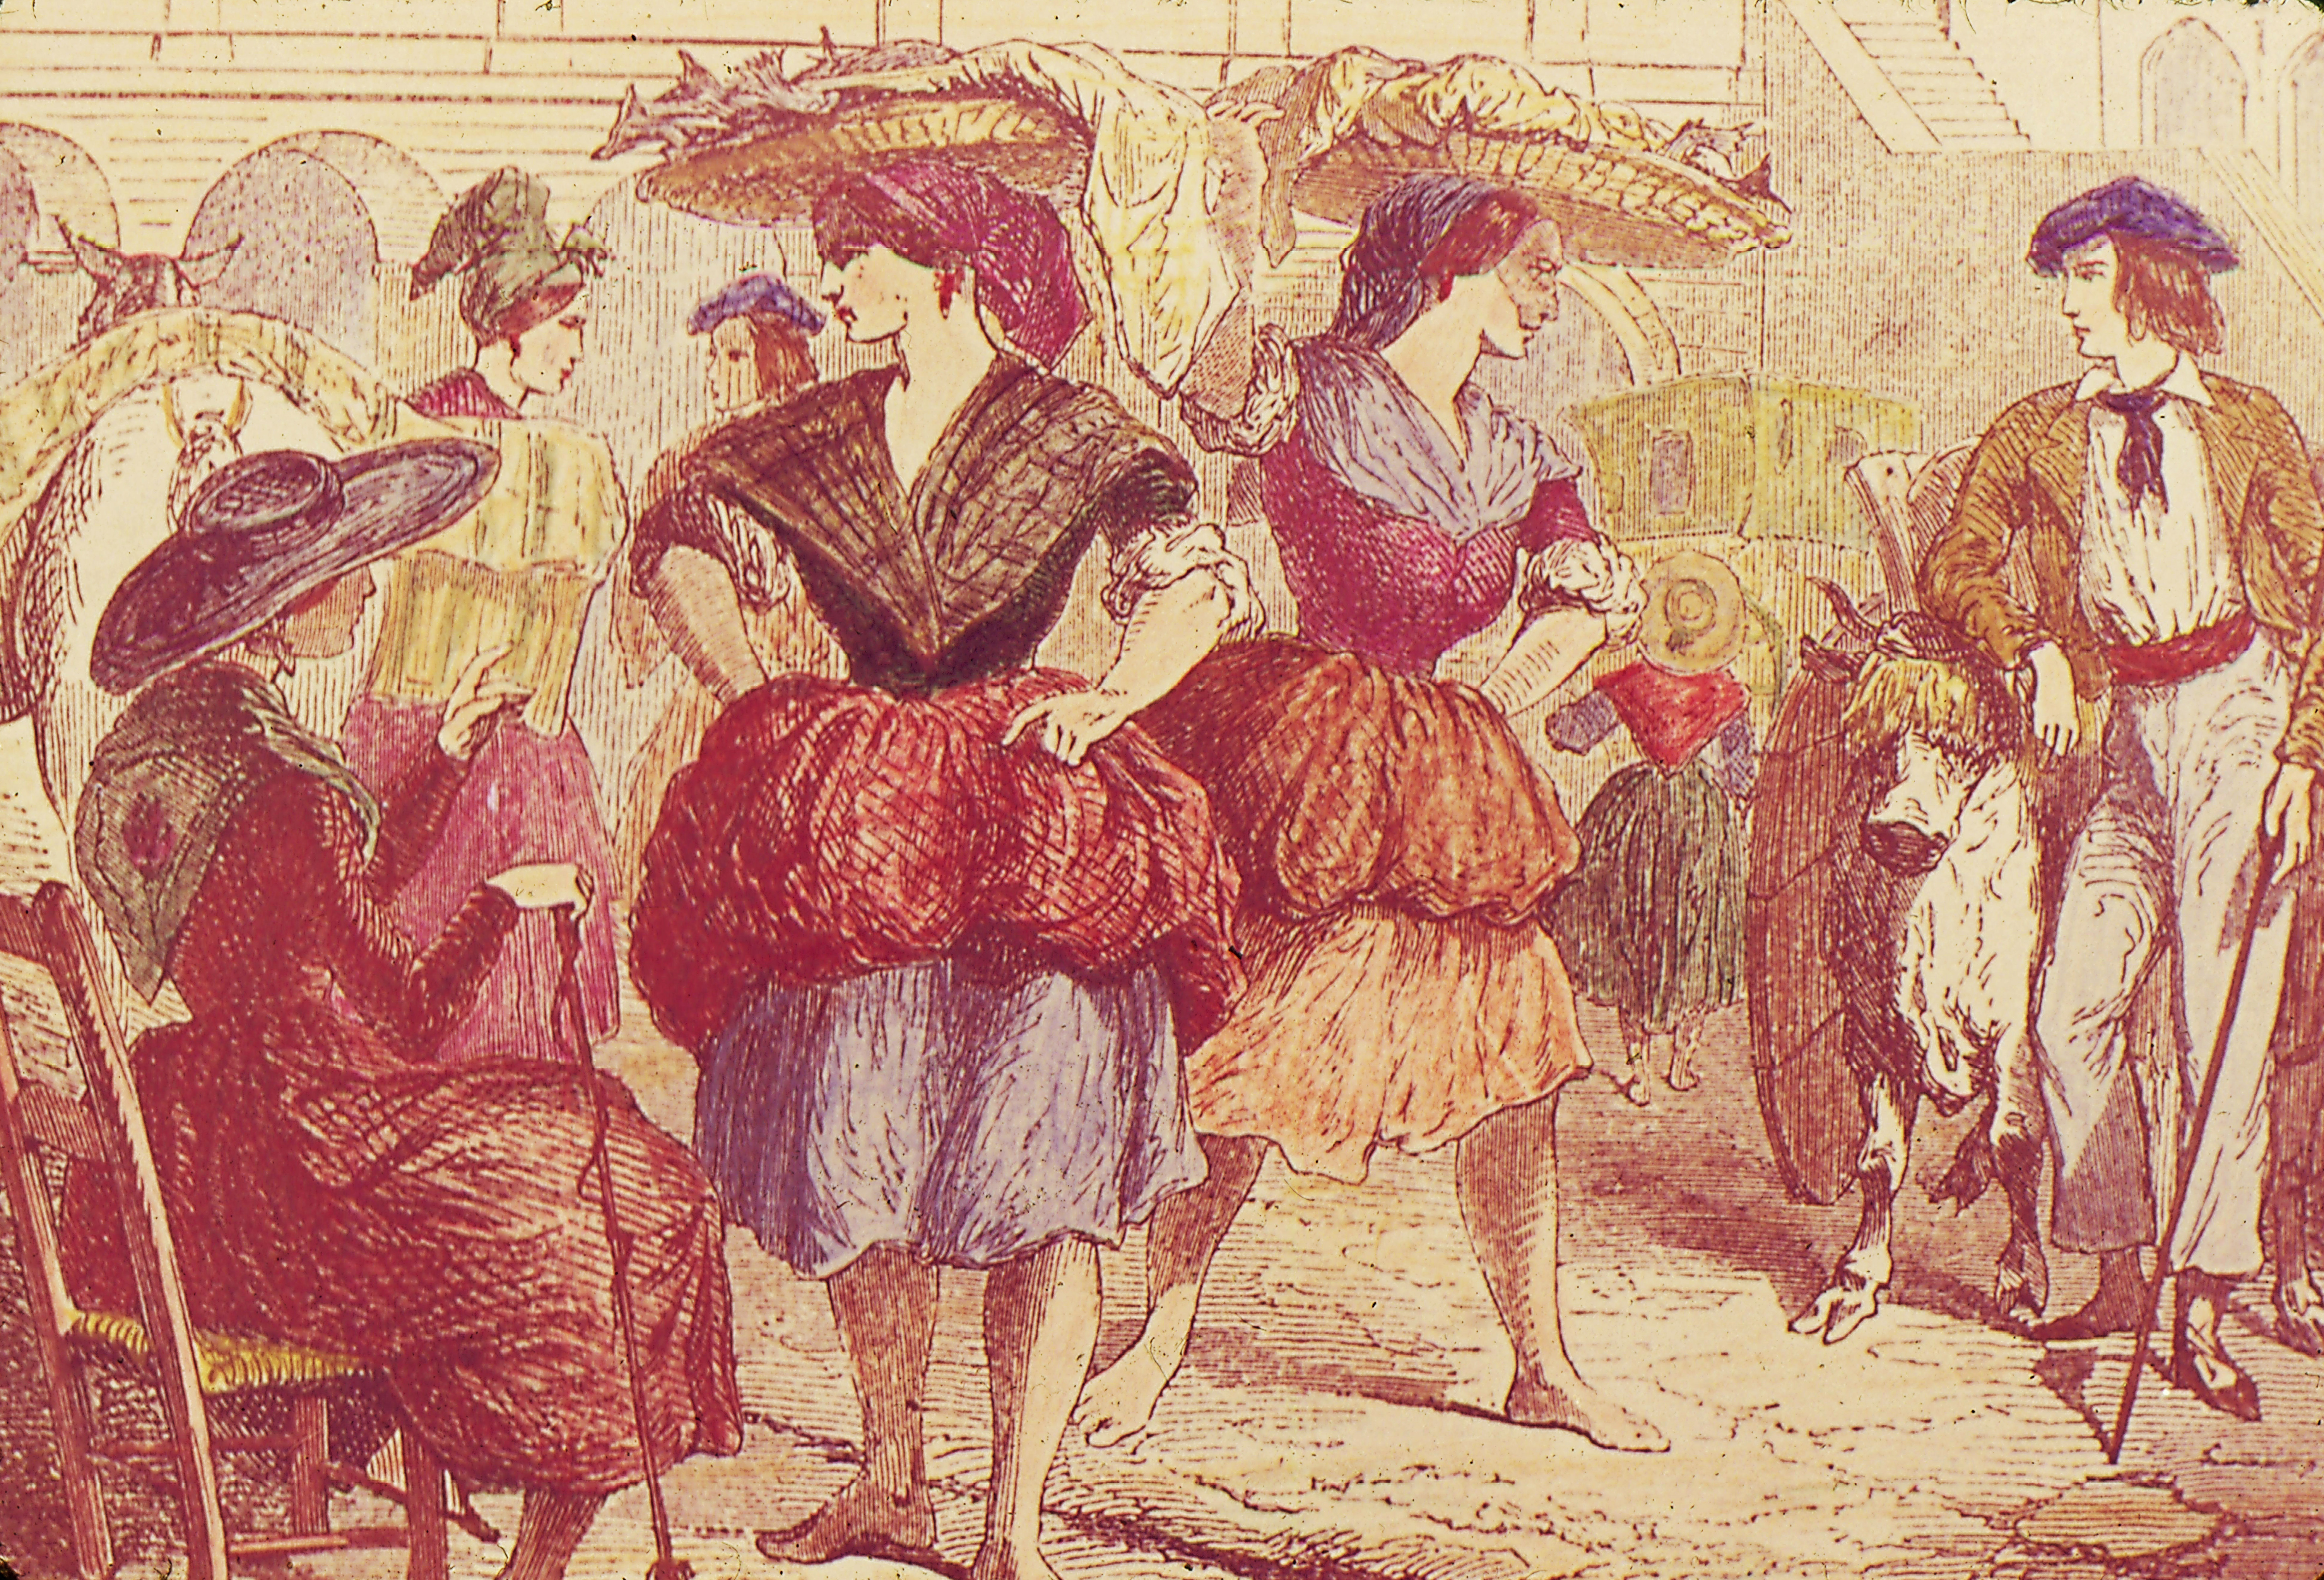 Vendedoras de pescado en Donostia a mediados del siglo XIX. Escena costumbrista comentada por Luis de Madariaga en El país vasco-navarro